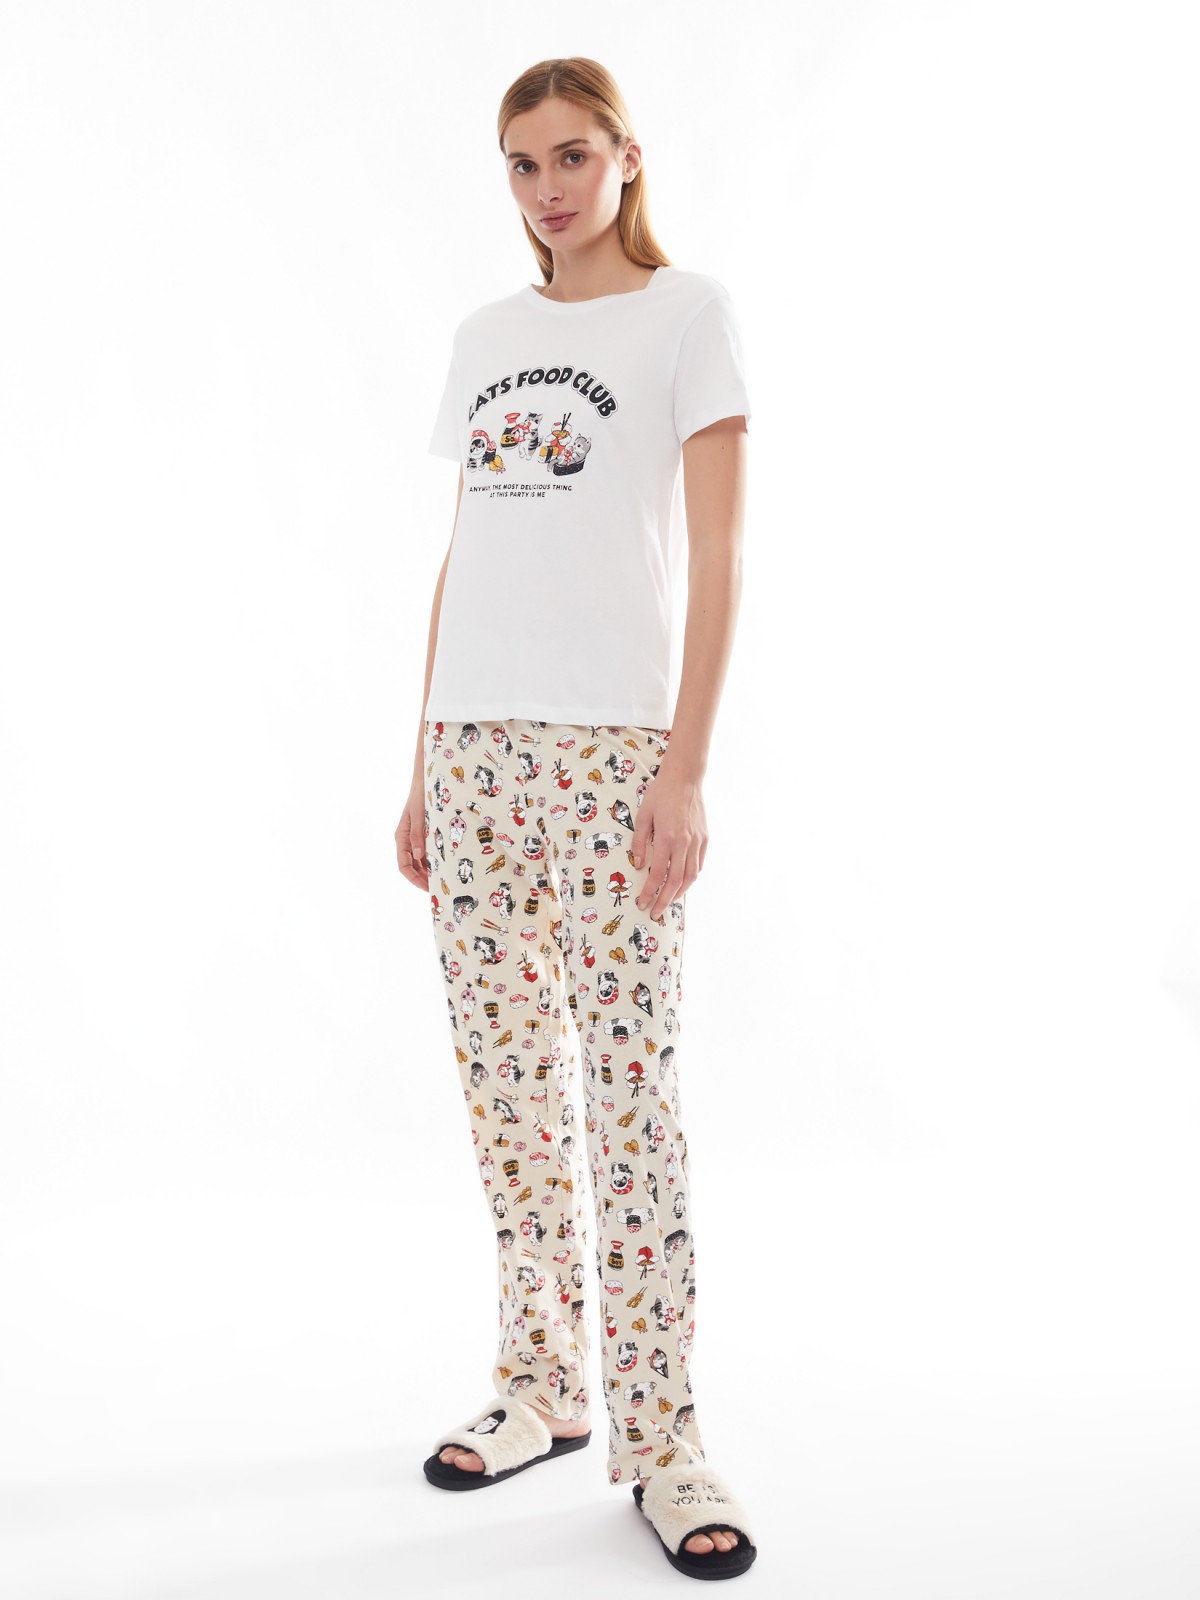 Домашний пижамный комплект из хлопка (футболка и штаны) zolla цвет молоко